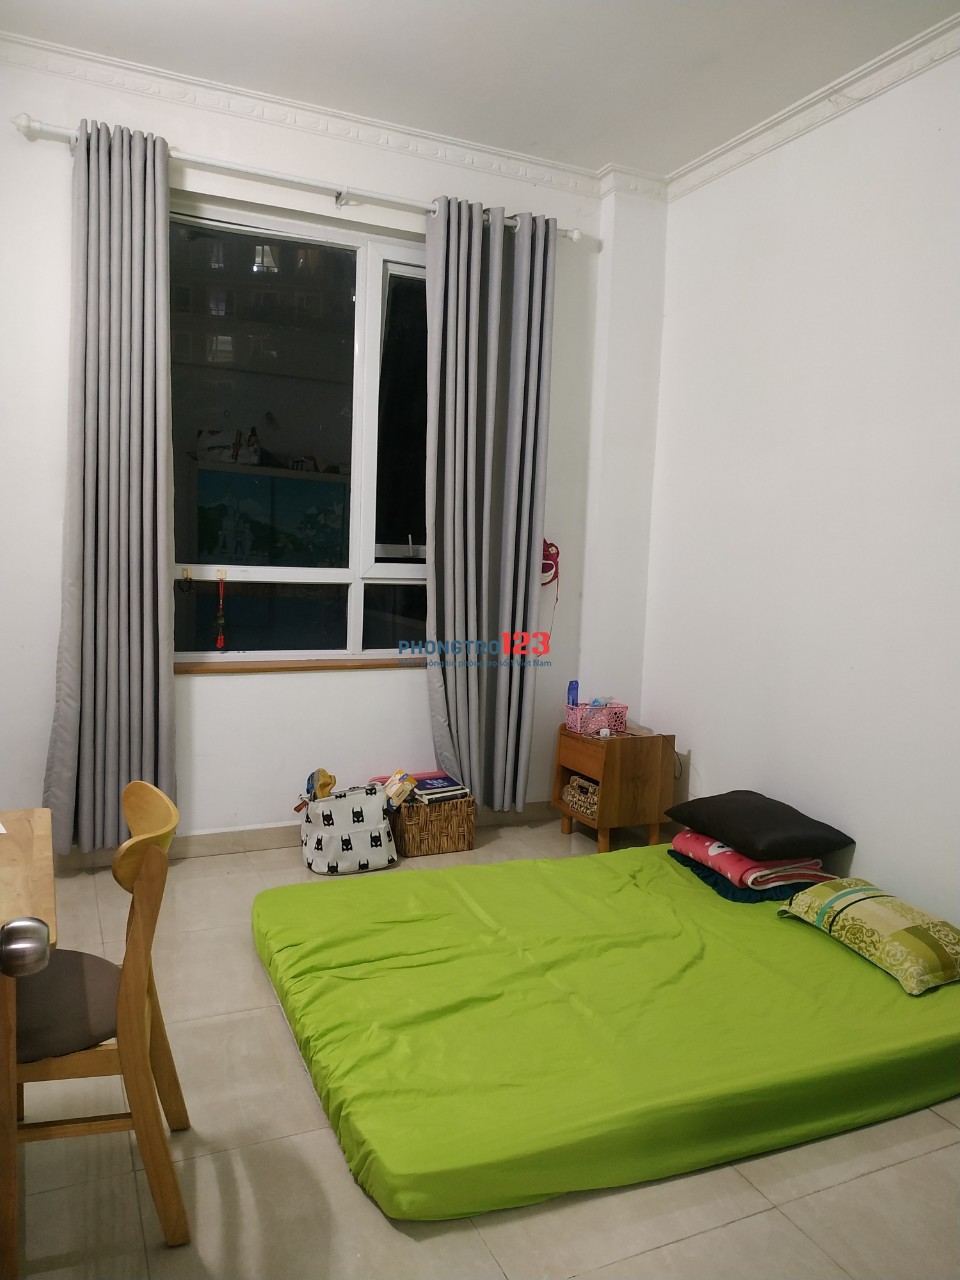 Tìm Nữ share 1 phòng trong căn hộ 3 phòng ngủ tại số 125 chung cư CBD quận 2, TP Thủ Đức